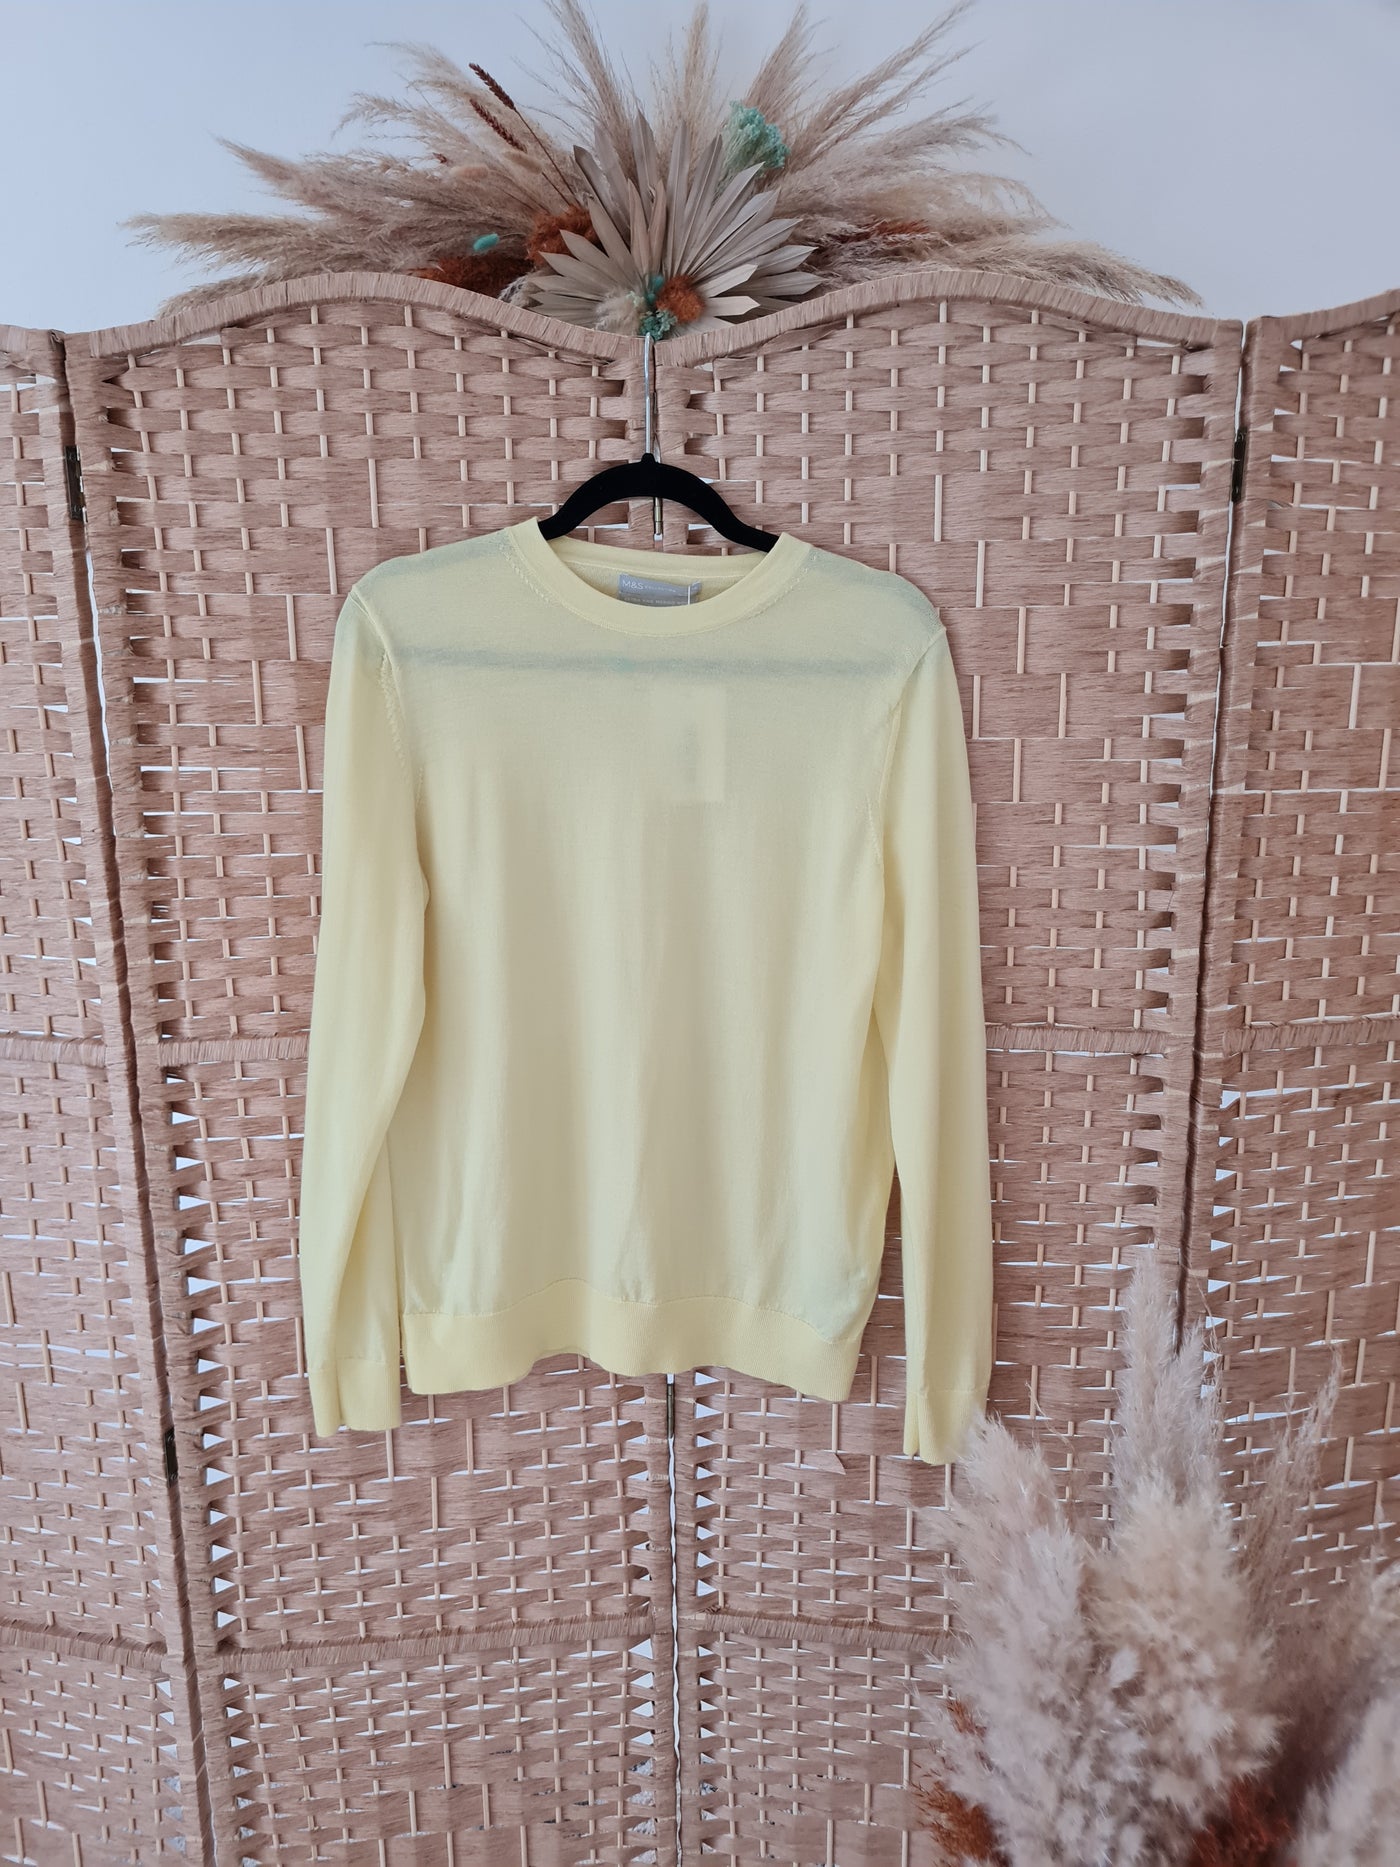 M&S yellow merino wool jumper 14